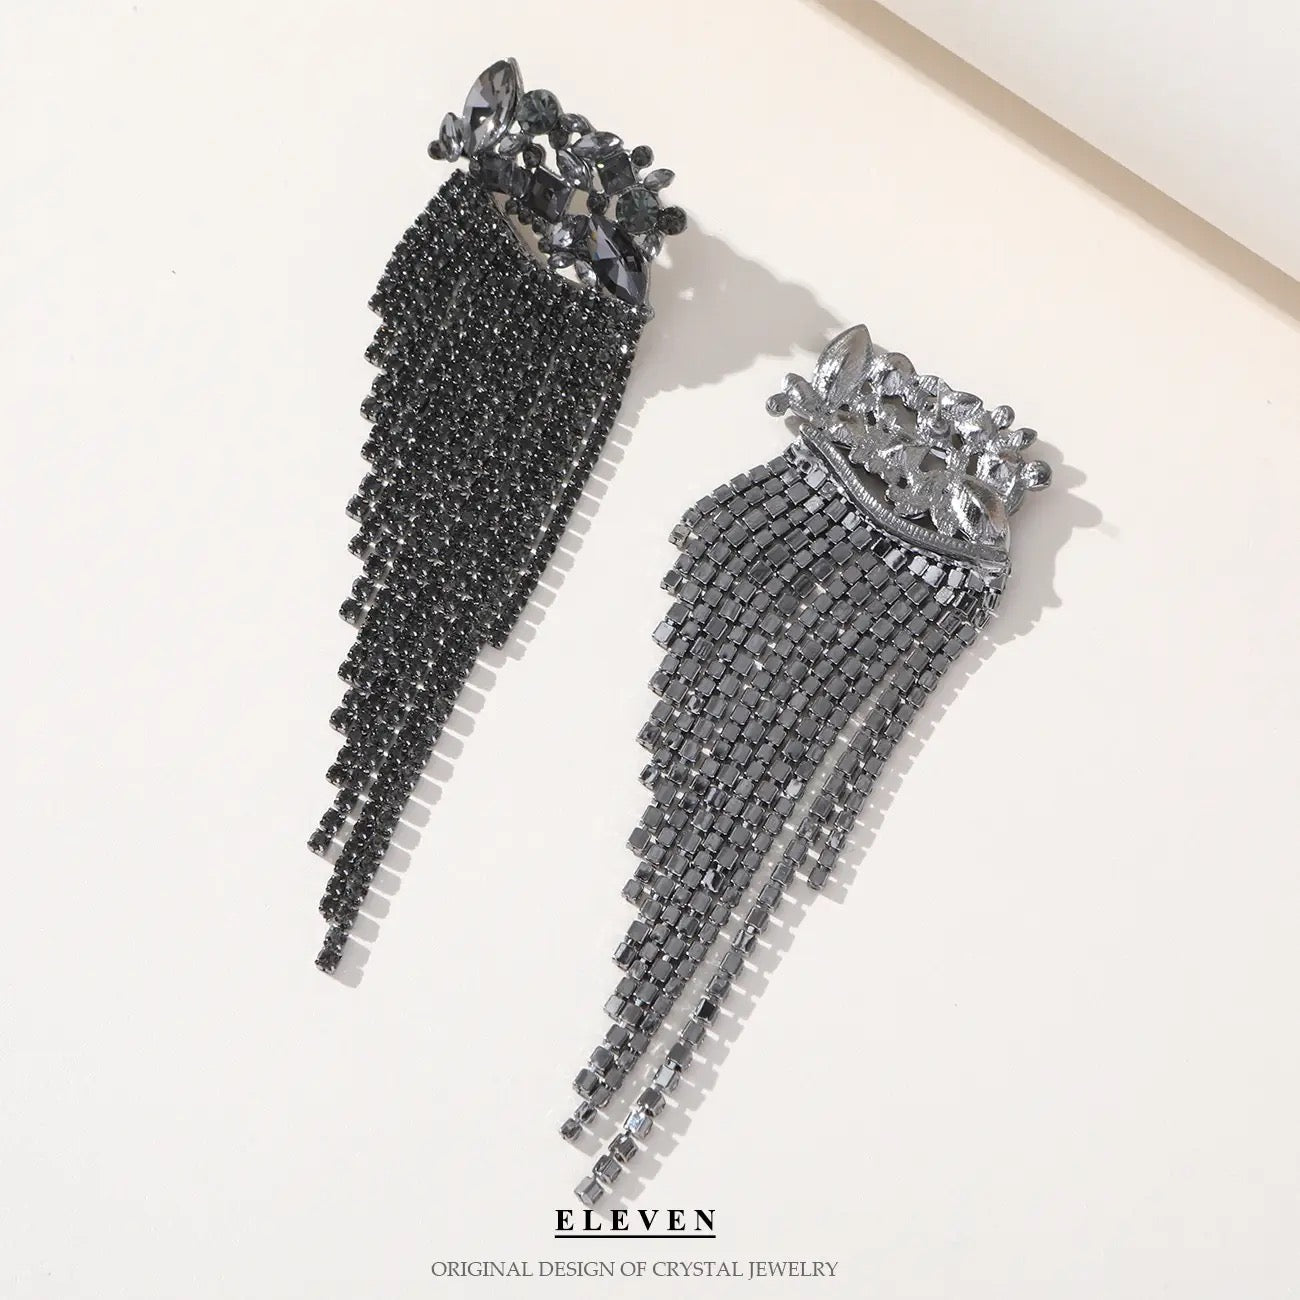 Black “tassels” Earrings